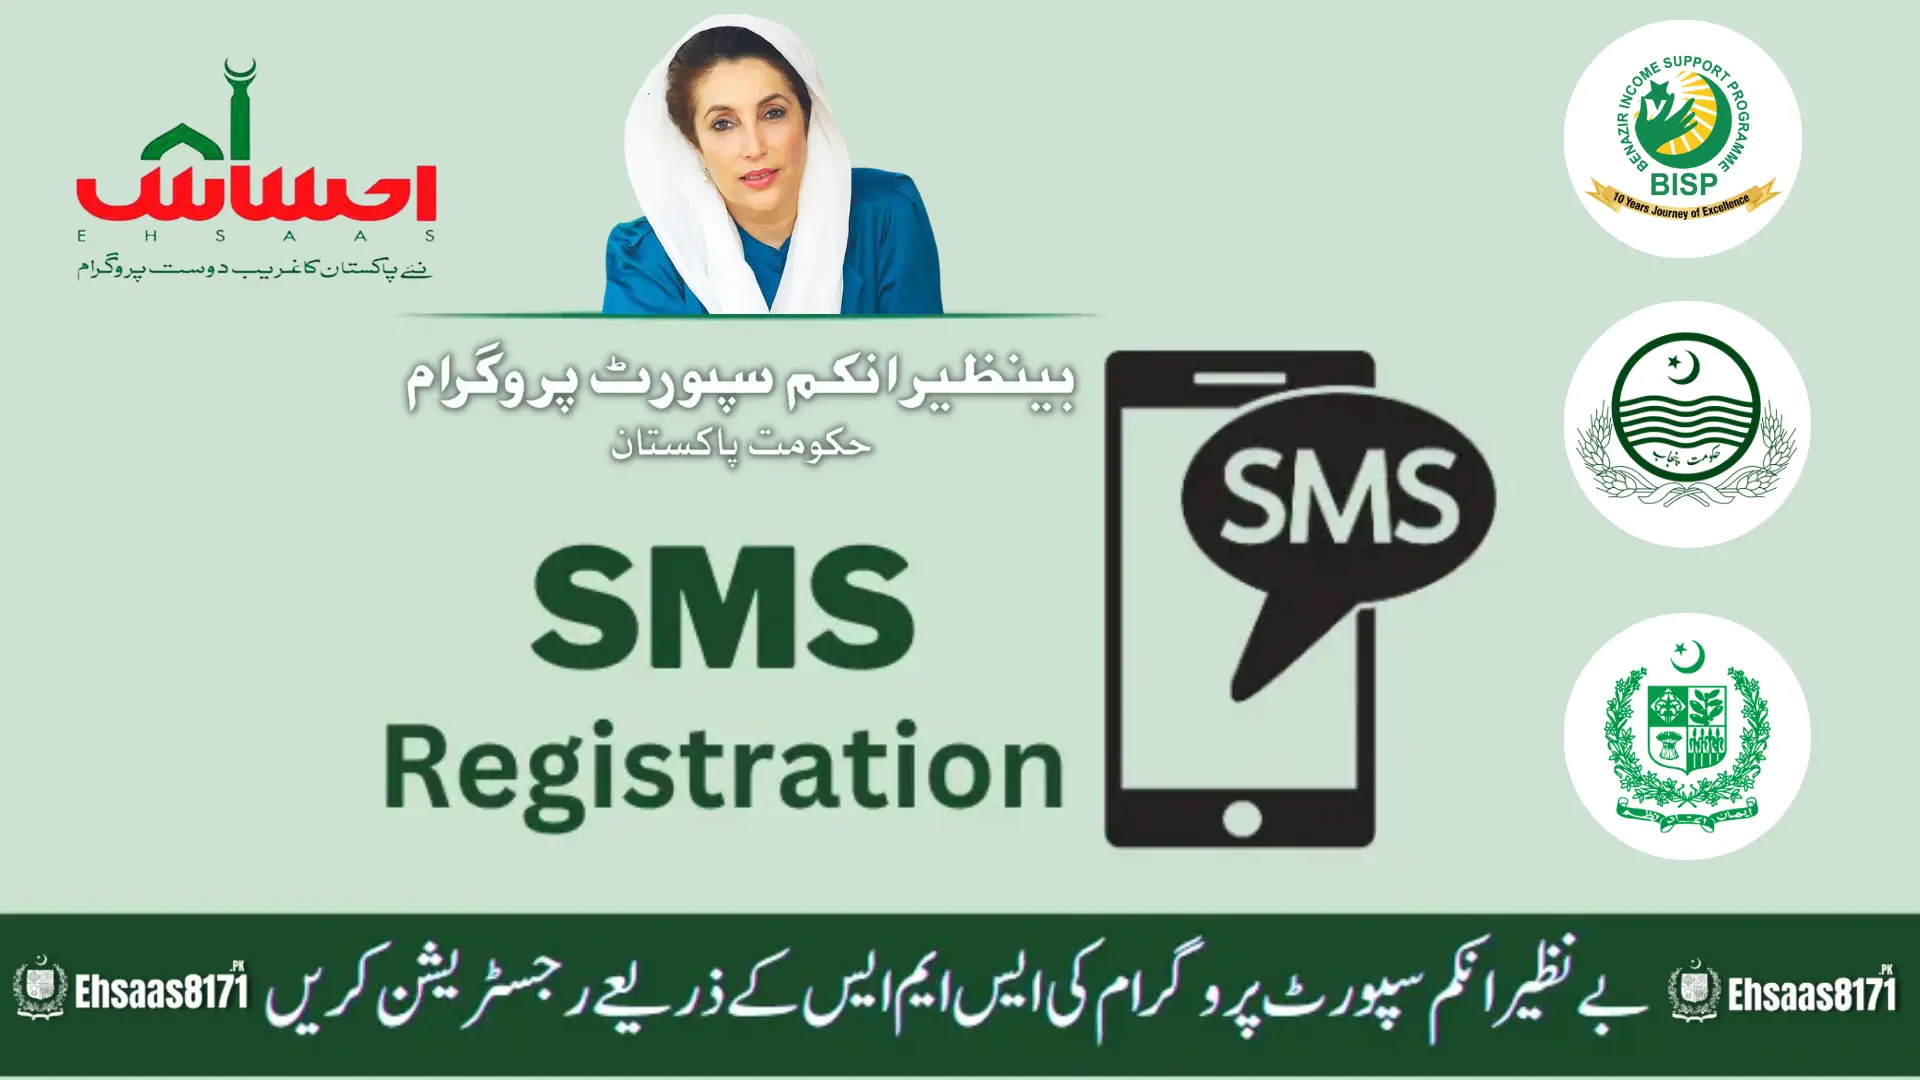 BISP SMS Registration New Method